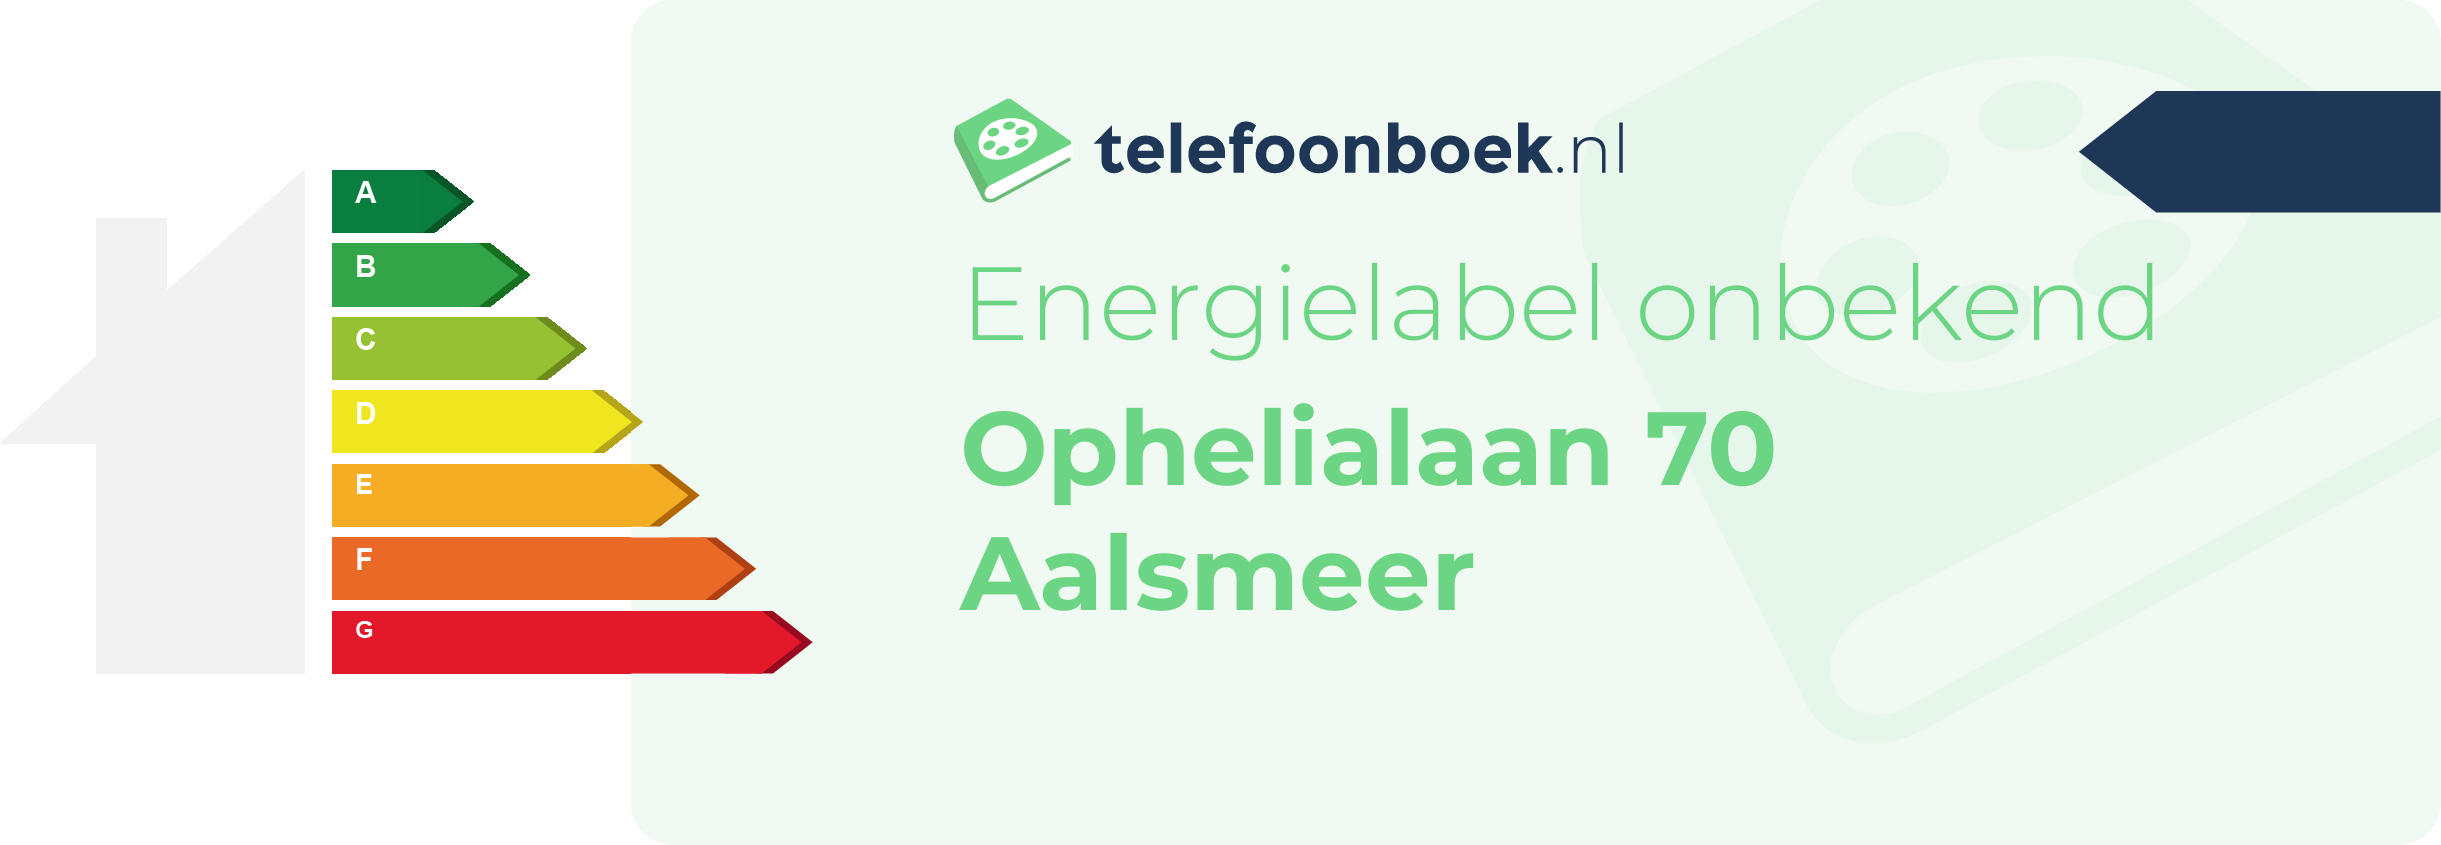 Energielabel Ophelialaan 70 Aalsmeer